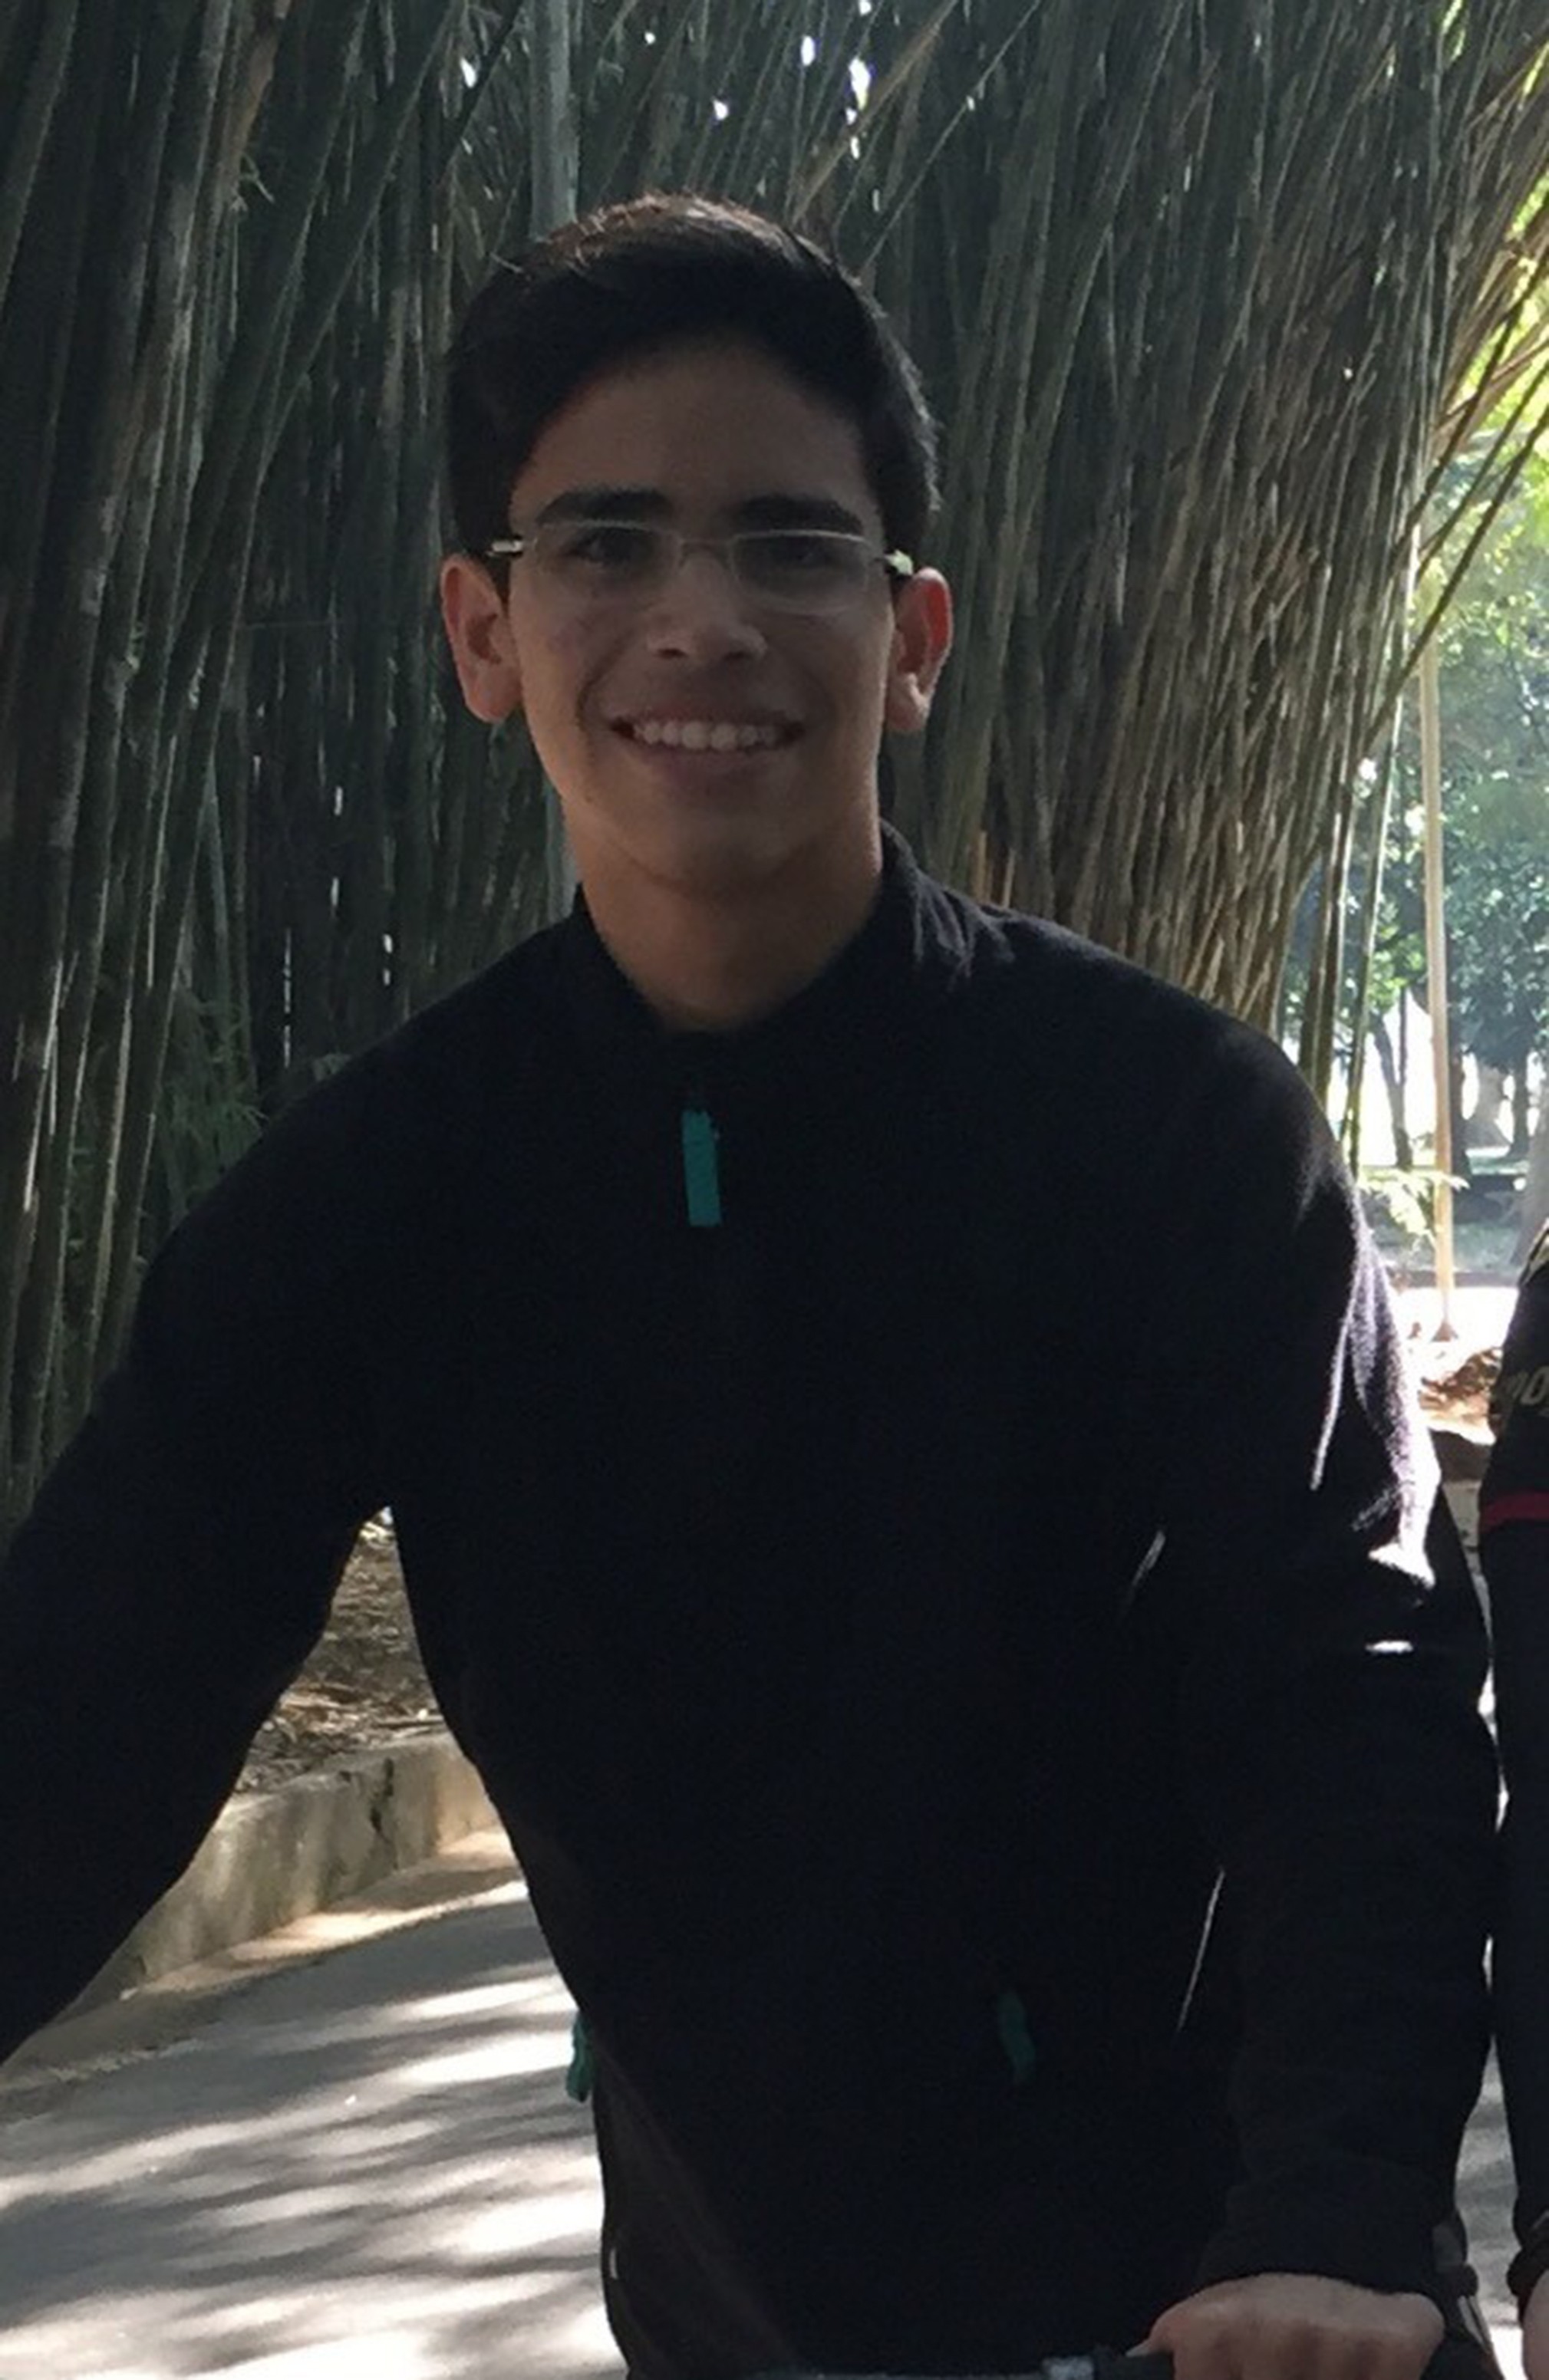 Nathan Luiz Bezerra Martins - tem 17 anos, é de Fortaleza (CE) e cursa o 3º ano do ensino médio no colégio Ari de Sá (Foto: divulgação)